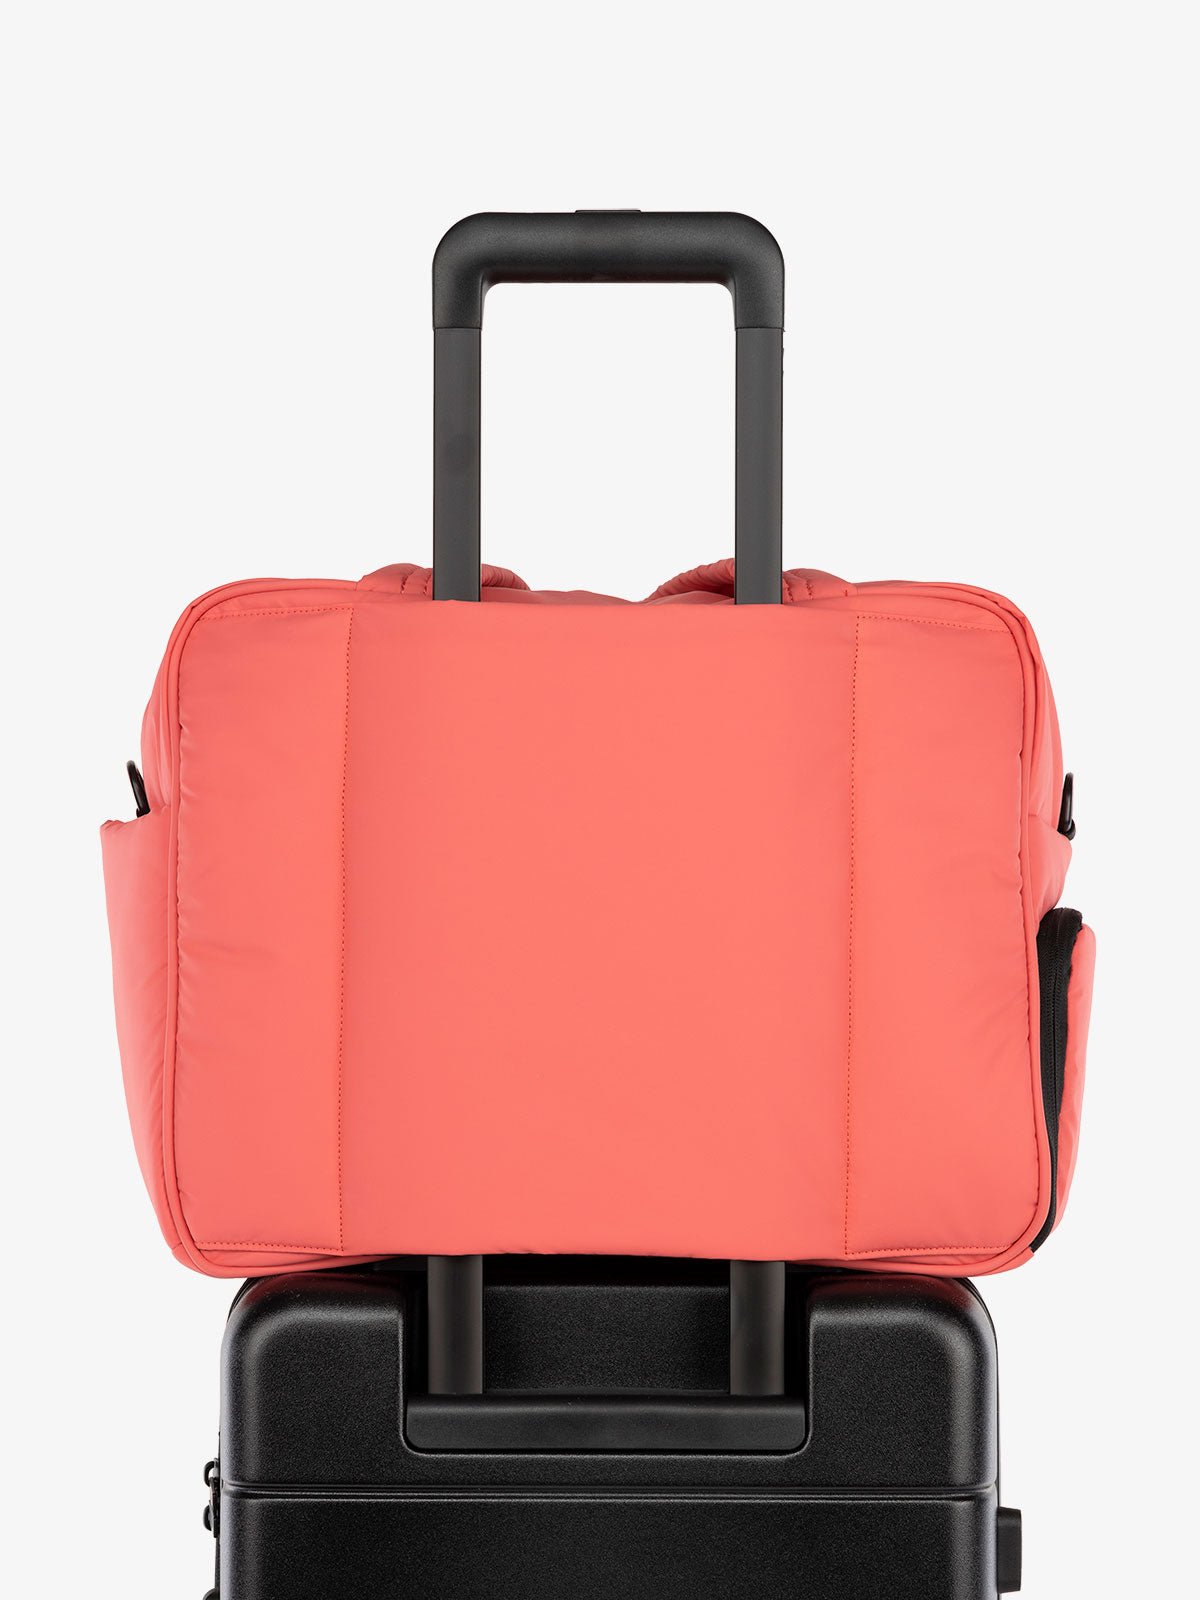 CALPAK Luka Weekender Duffel Bag with trolley sleeve for travel in pink